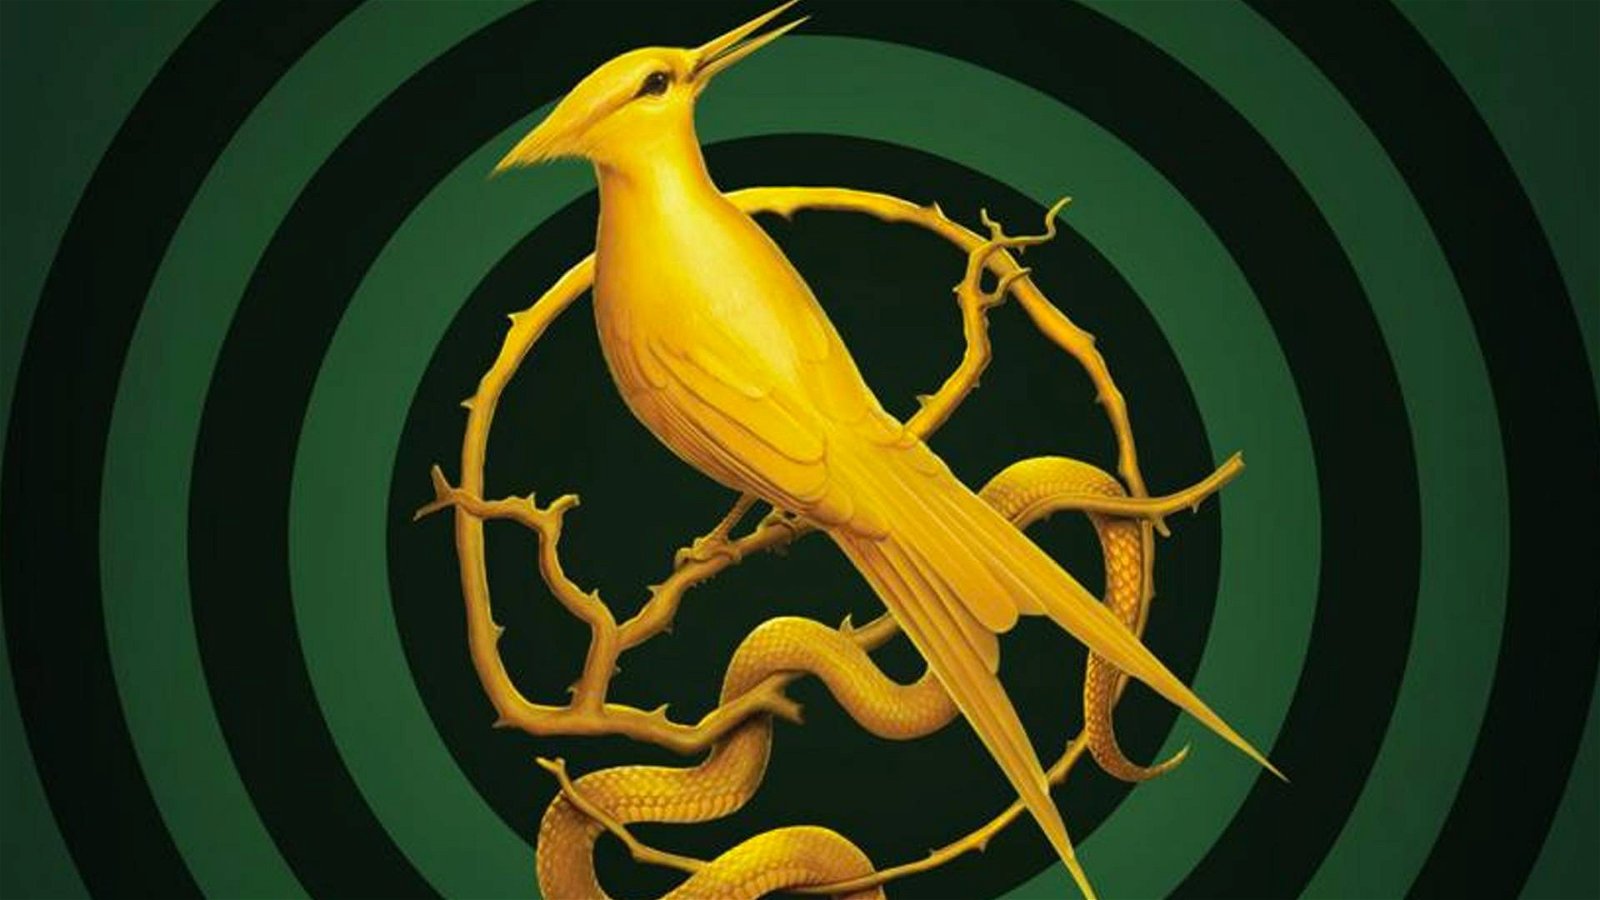 Immagine di Coriolanus Snow sarà il protagonista di The Ballad of Songbirds and Snakes, il prequel di Hunger Games